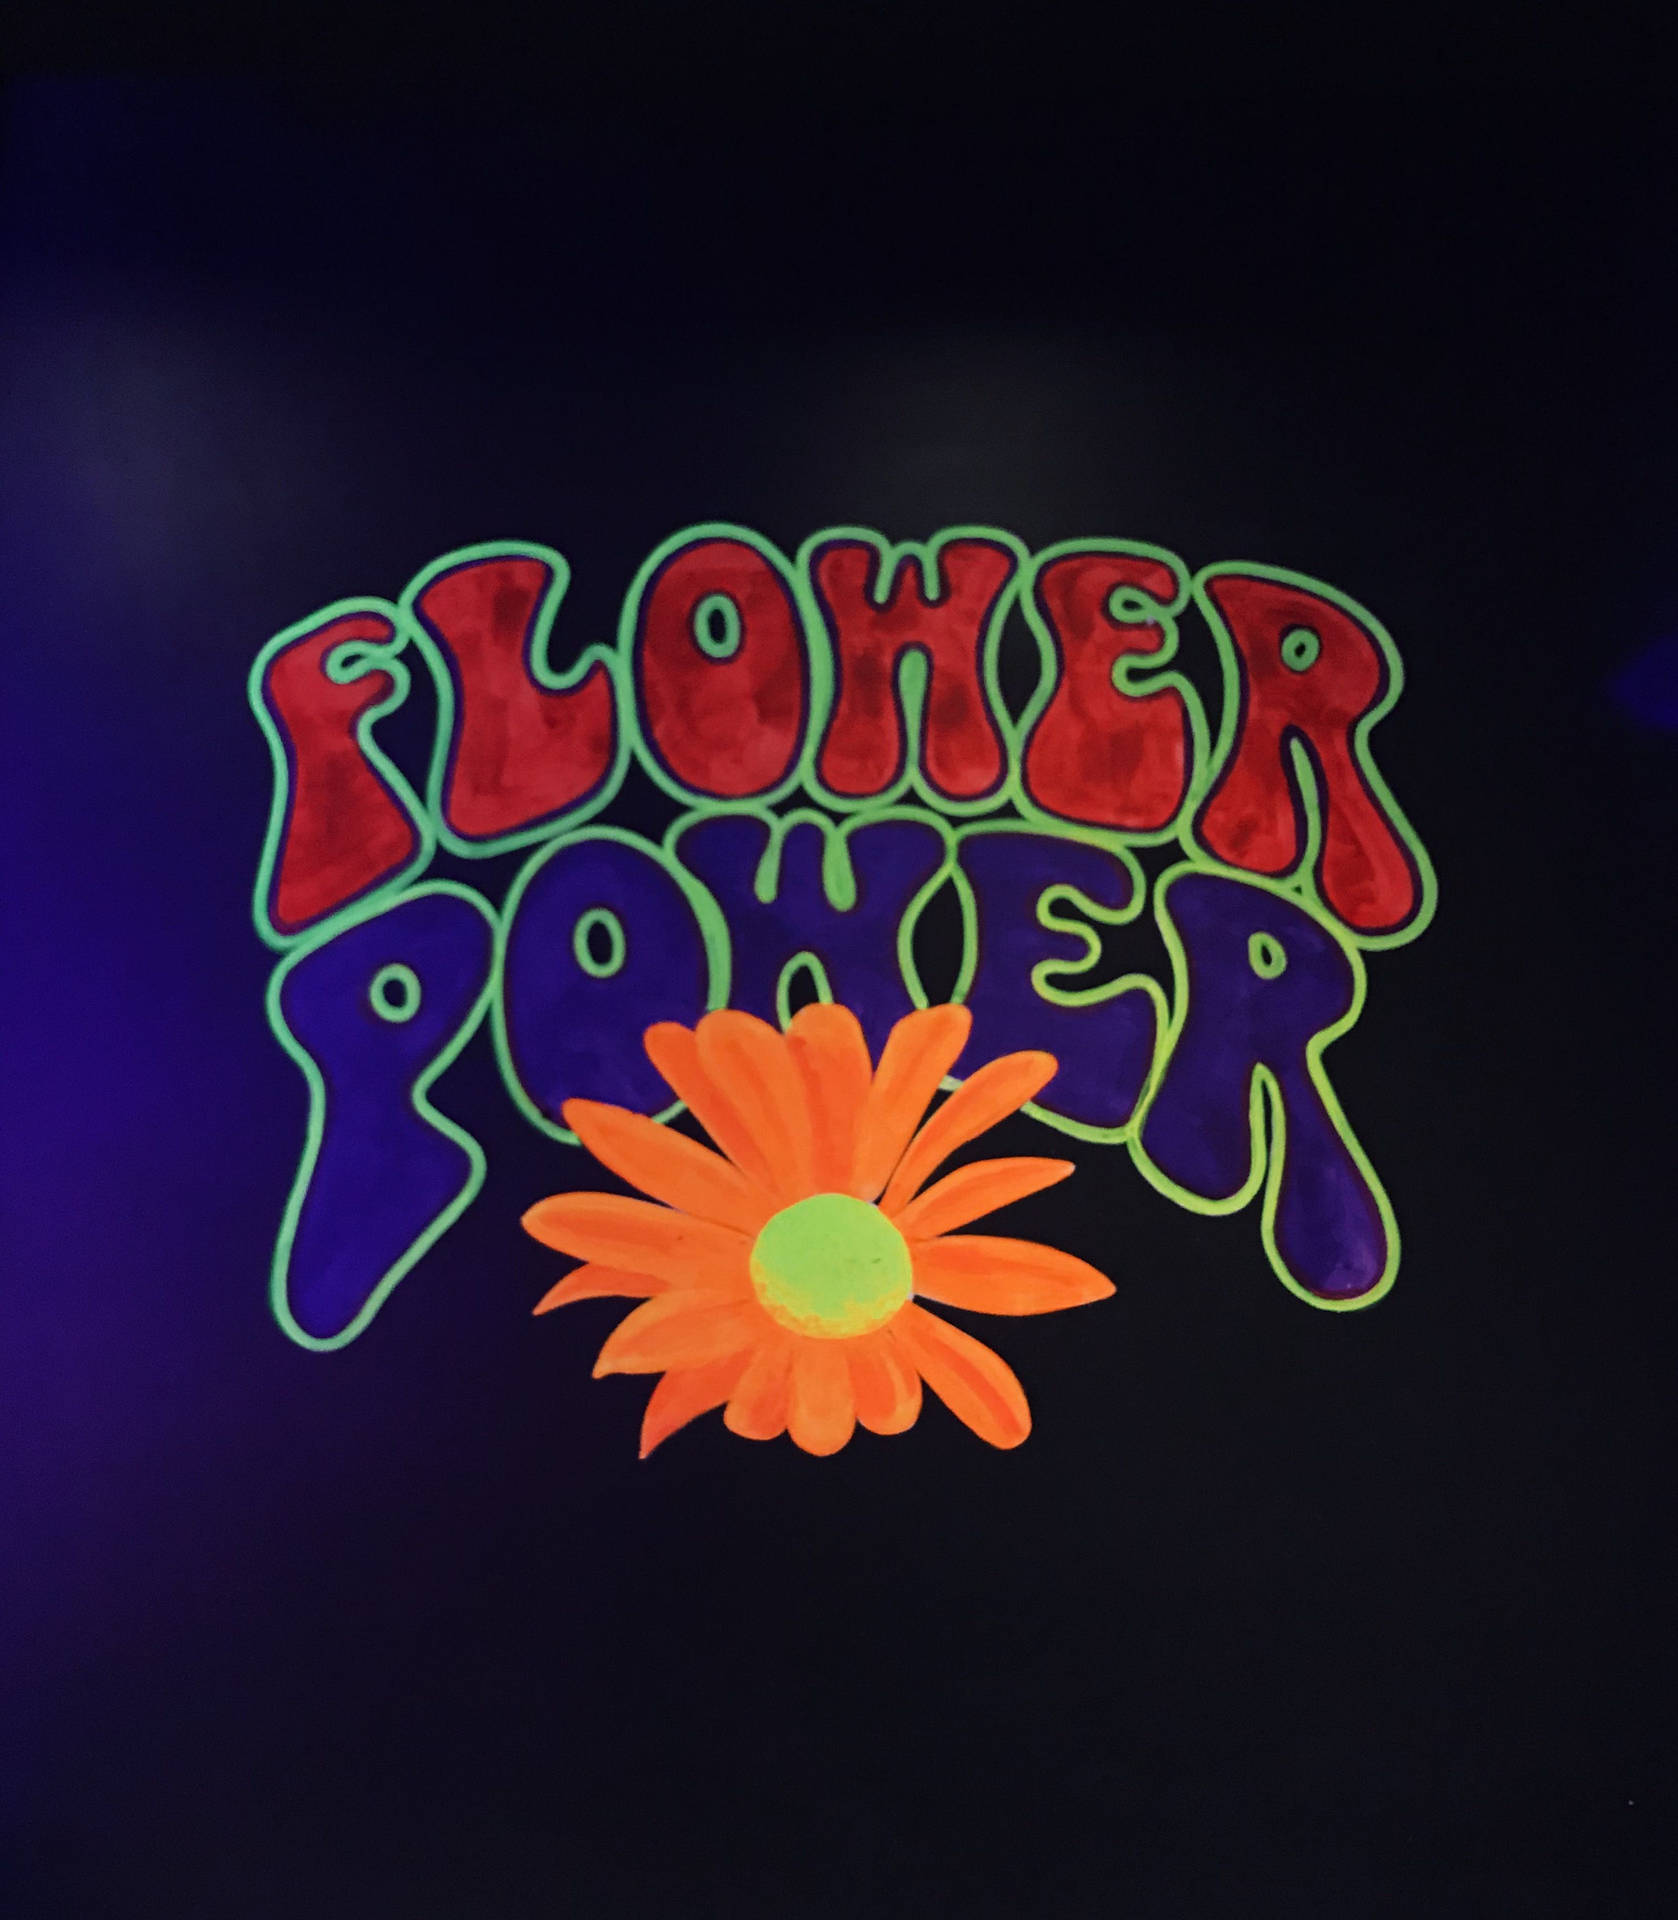 Hippie Flower Power Phrase Background